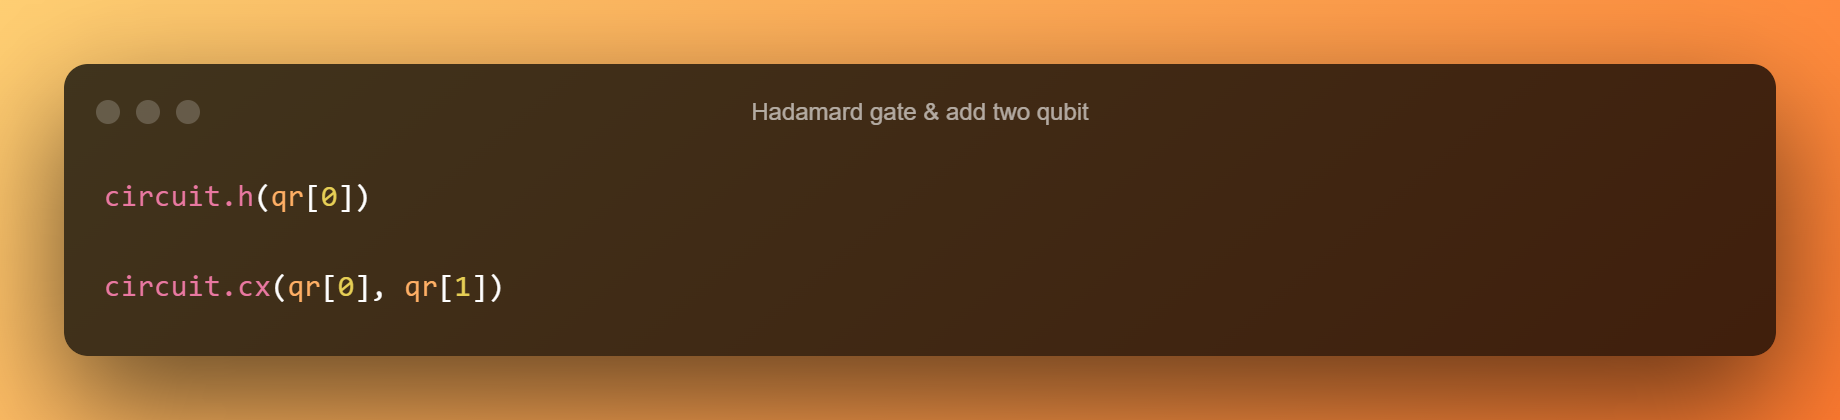 Hadamard Gate Add Two Qubit